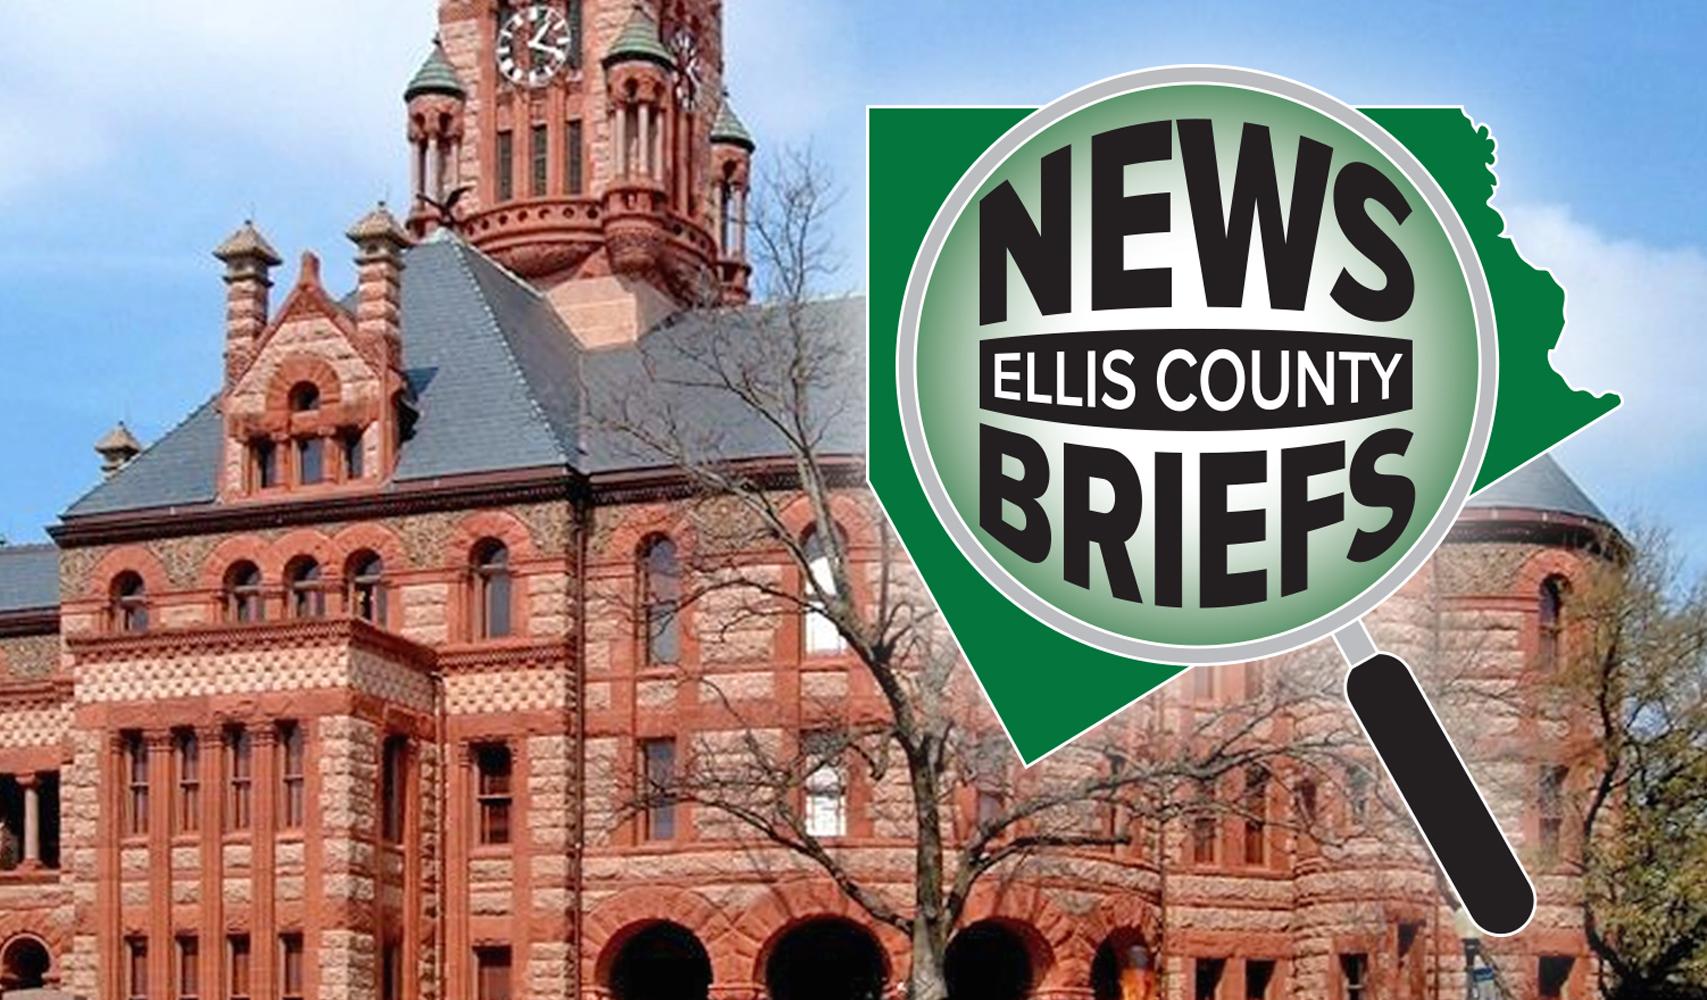  Ellis County Press